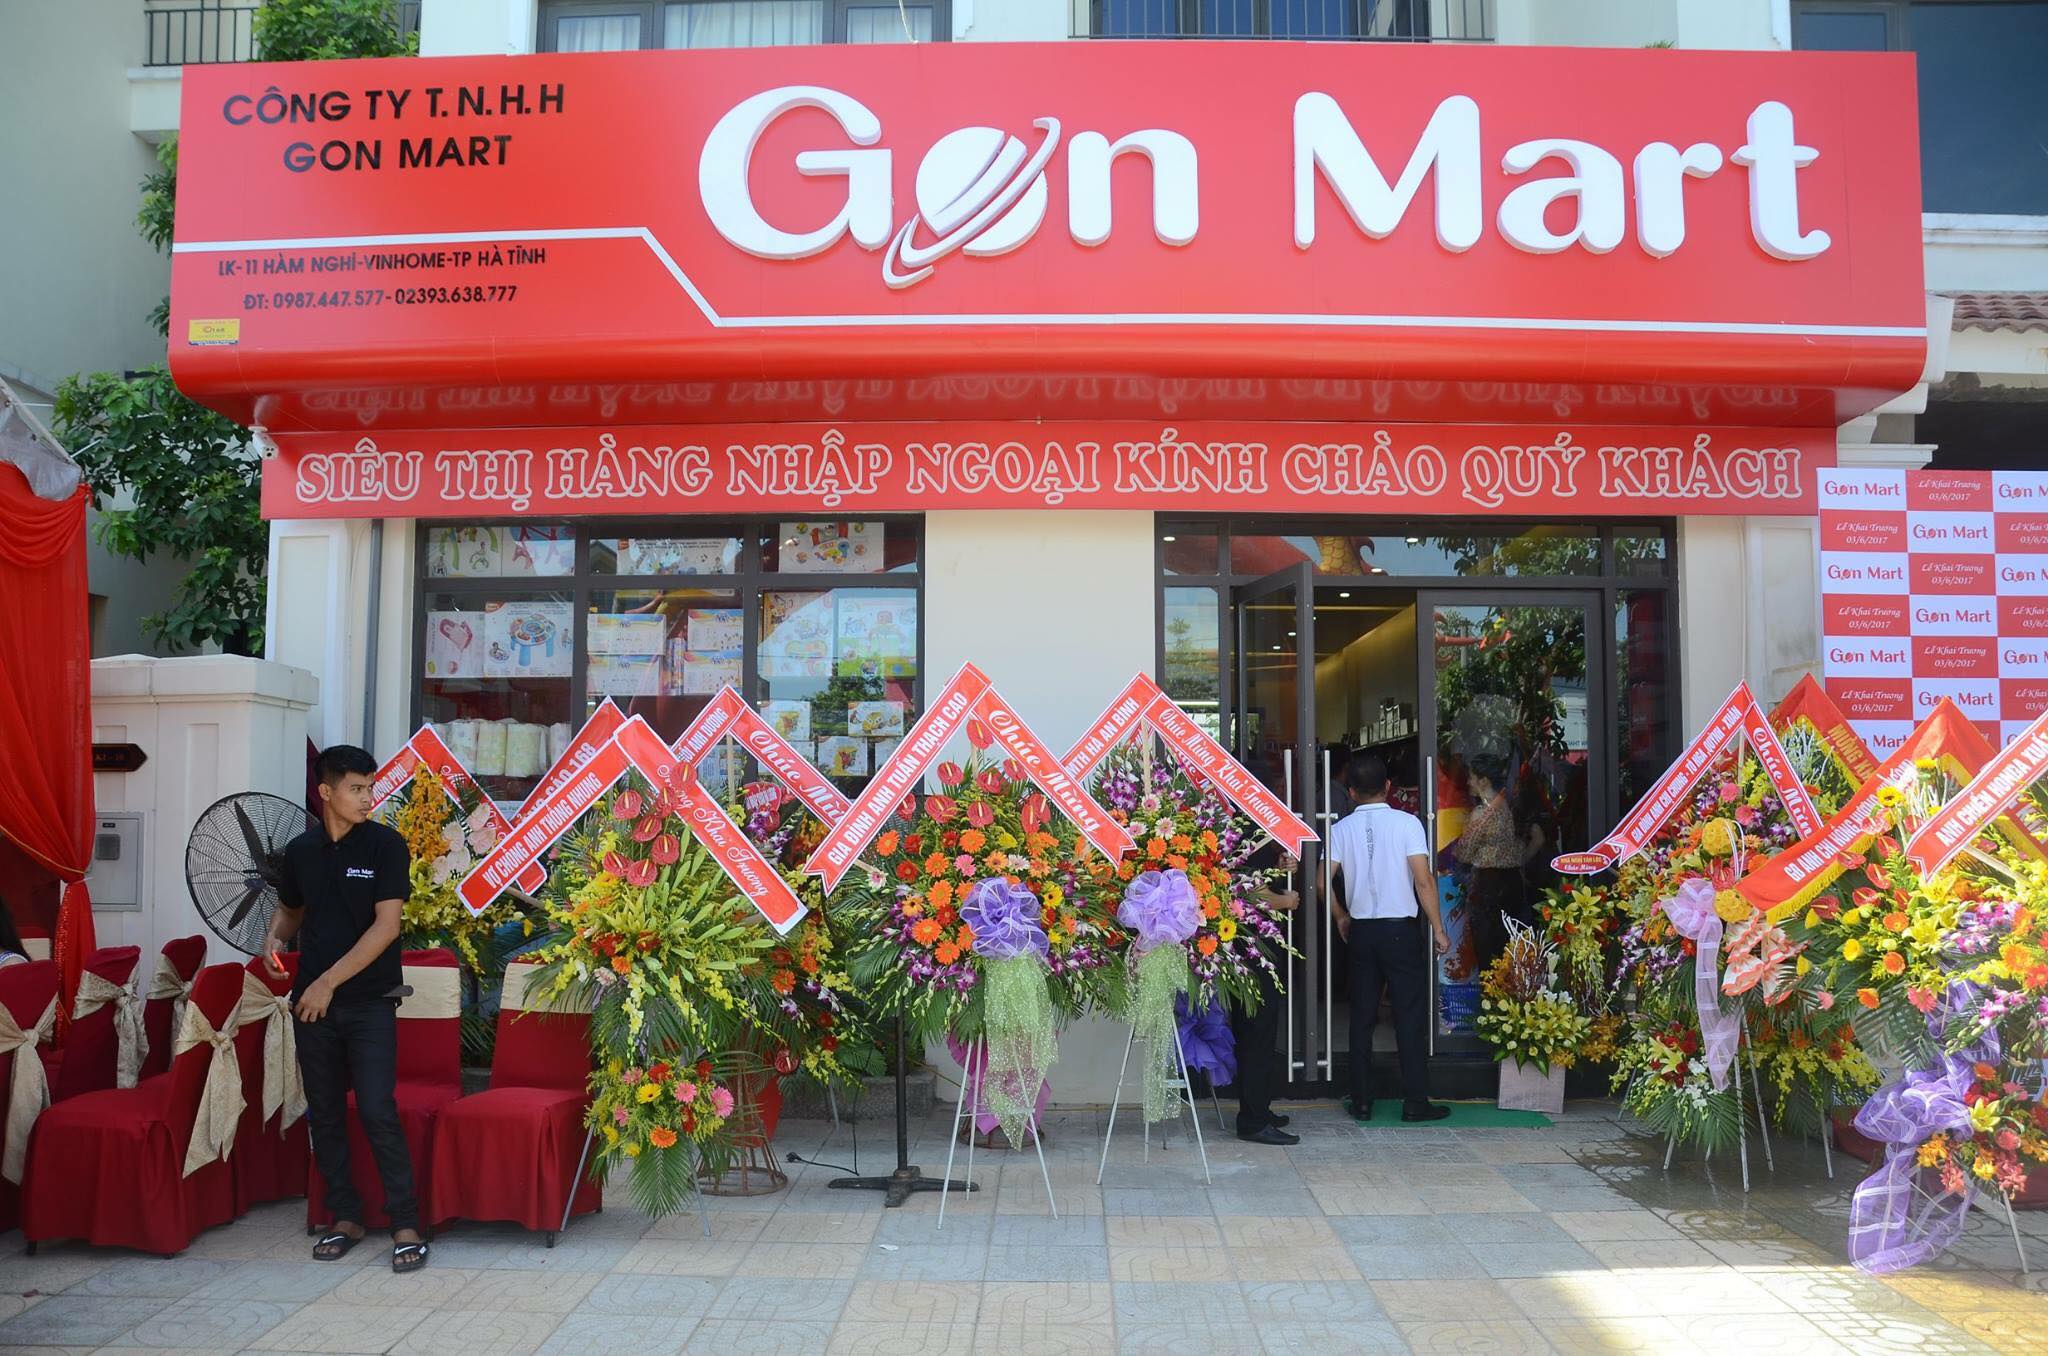 Gon Mart LK 1-11 Vinhomes Hà Tĩnh, Hàm Nghi, Phường Hà Huy Tập, Thành phố Hà Tĩnh 0962251819